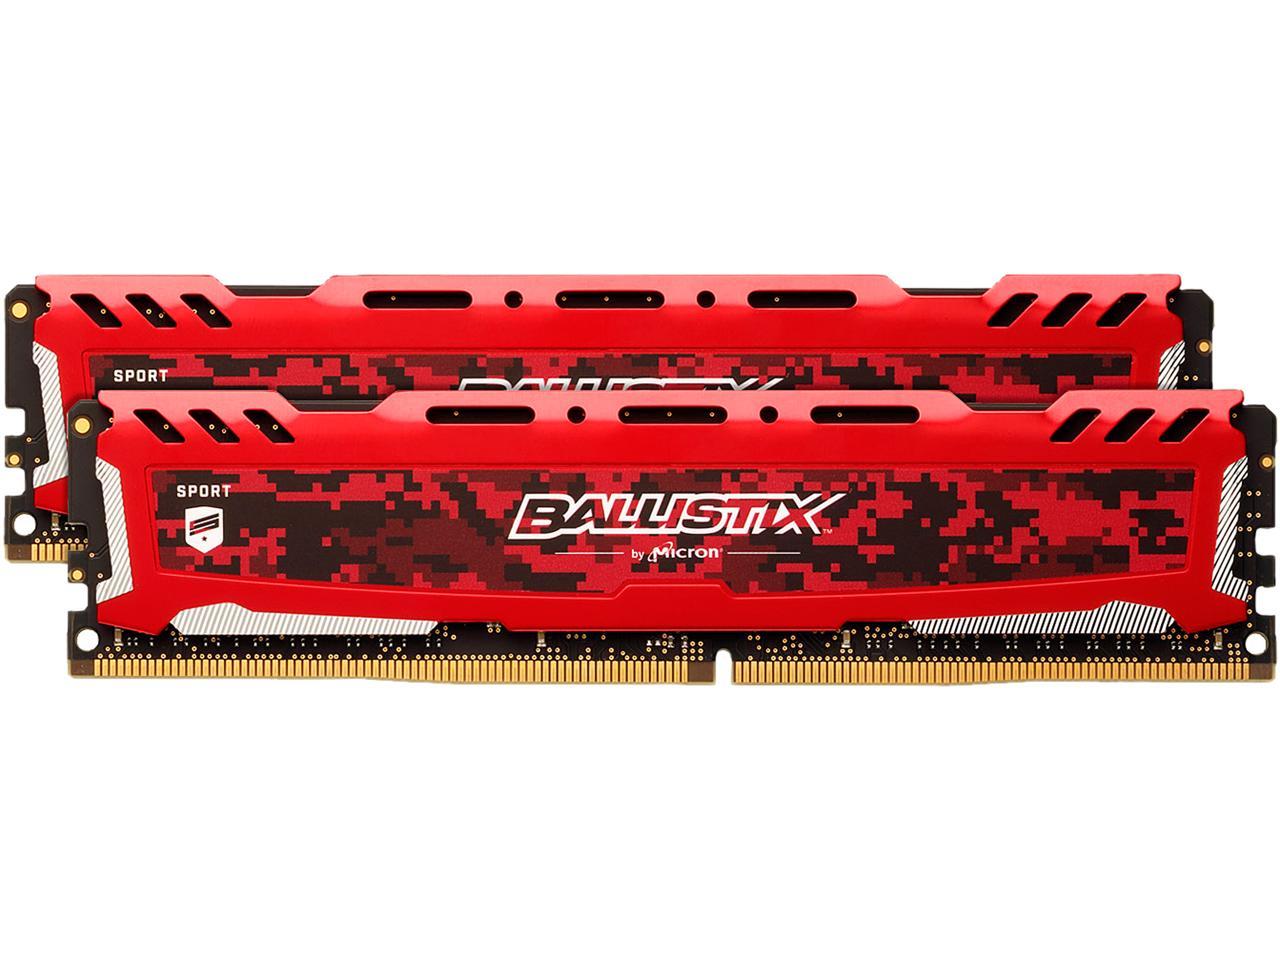 Ballistix Sport LT 32GB Kit (16GBx2) DDR4 2666 MT/s (PC4-21300) DR x8 DIMM 288-Pin - BLS2K16G4D26BFSE (Red)